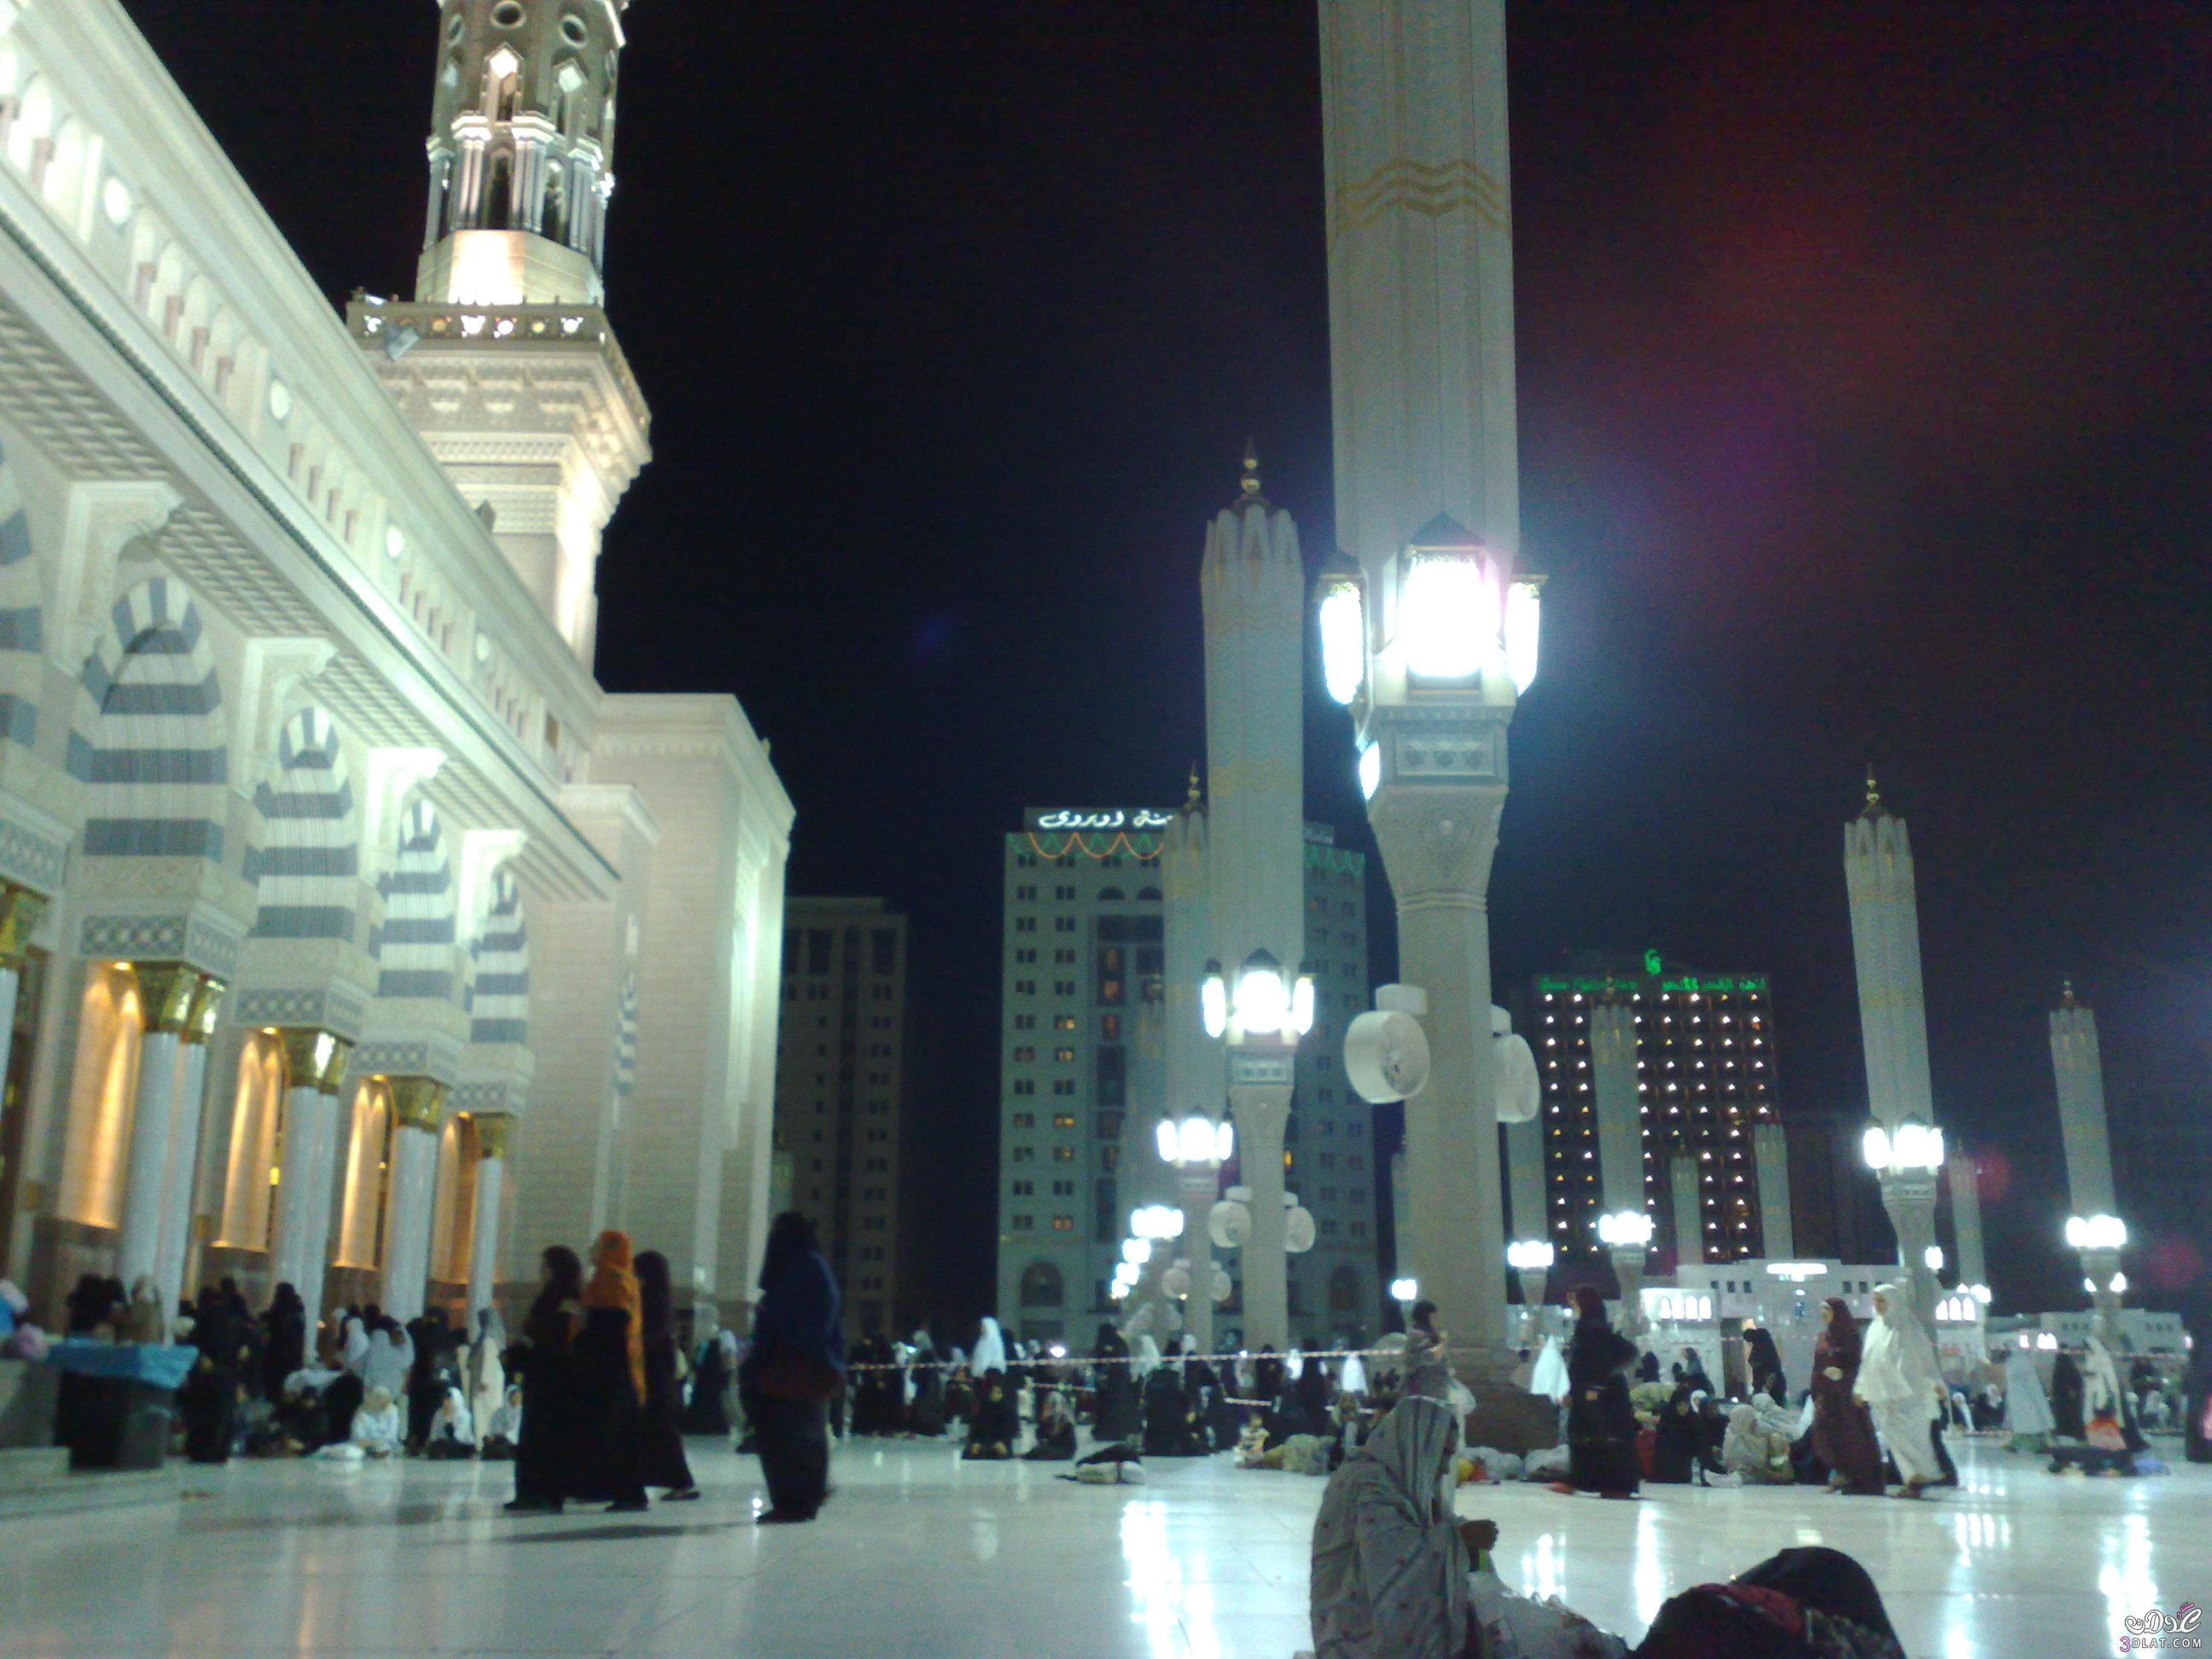 صور للمسجد النبوى وبعض المزارات بالمدينة